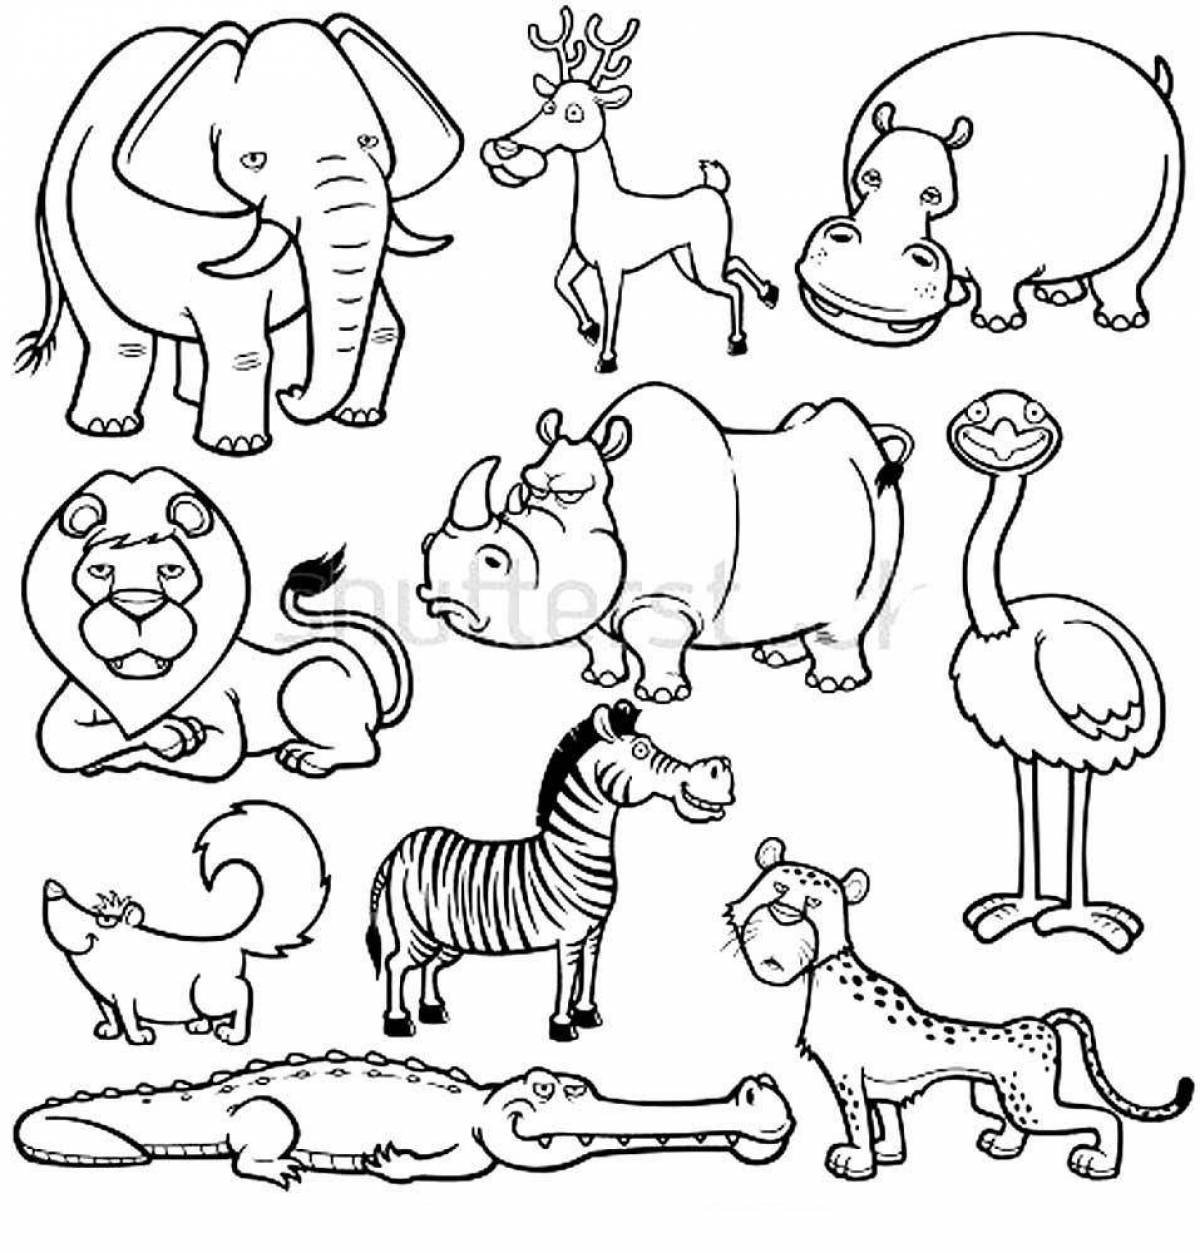 Очаровательная раскраска африканских животных для детей 4-5 лет